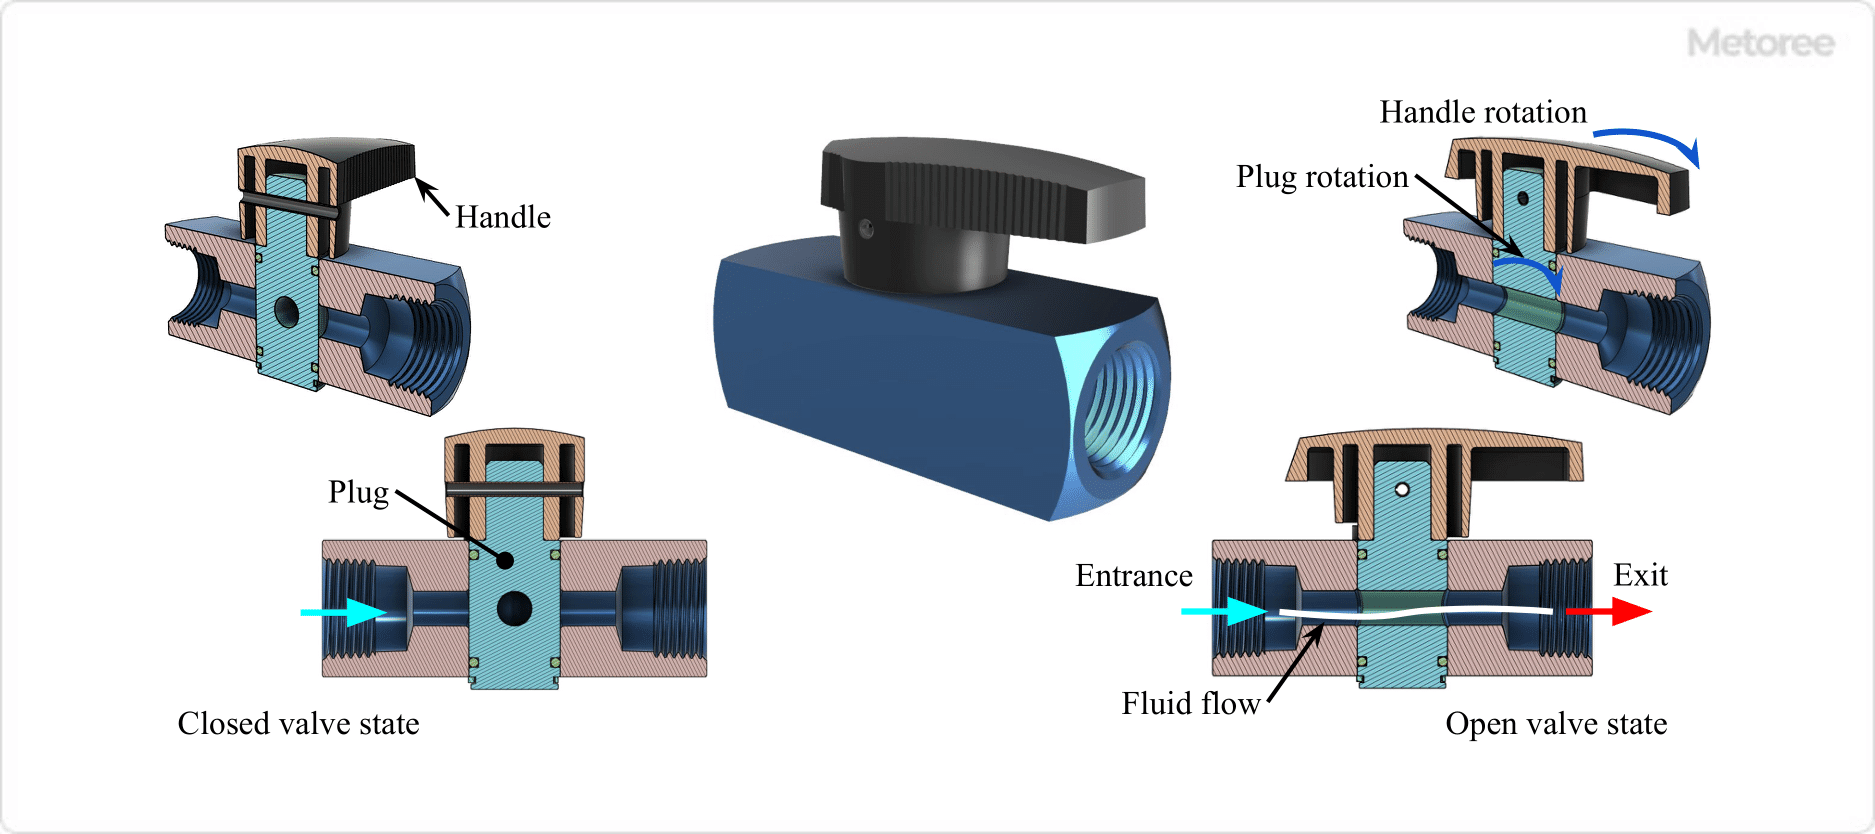 Figure 6. Plug valve